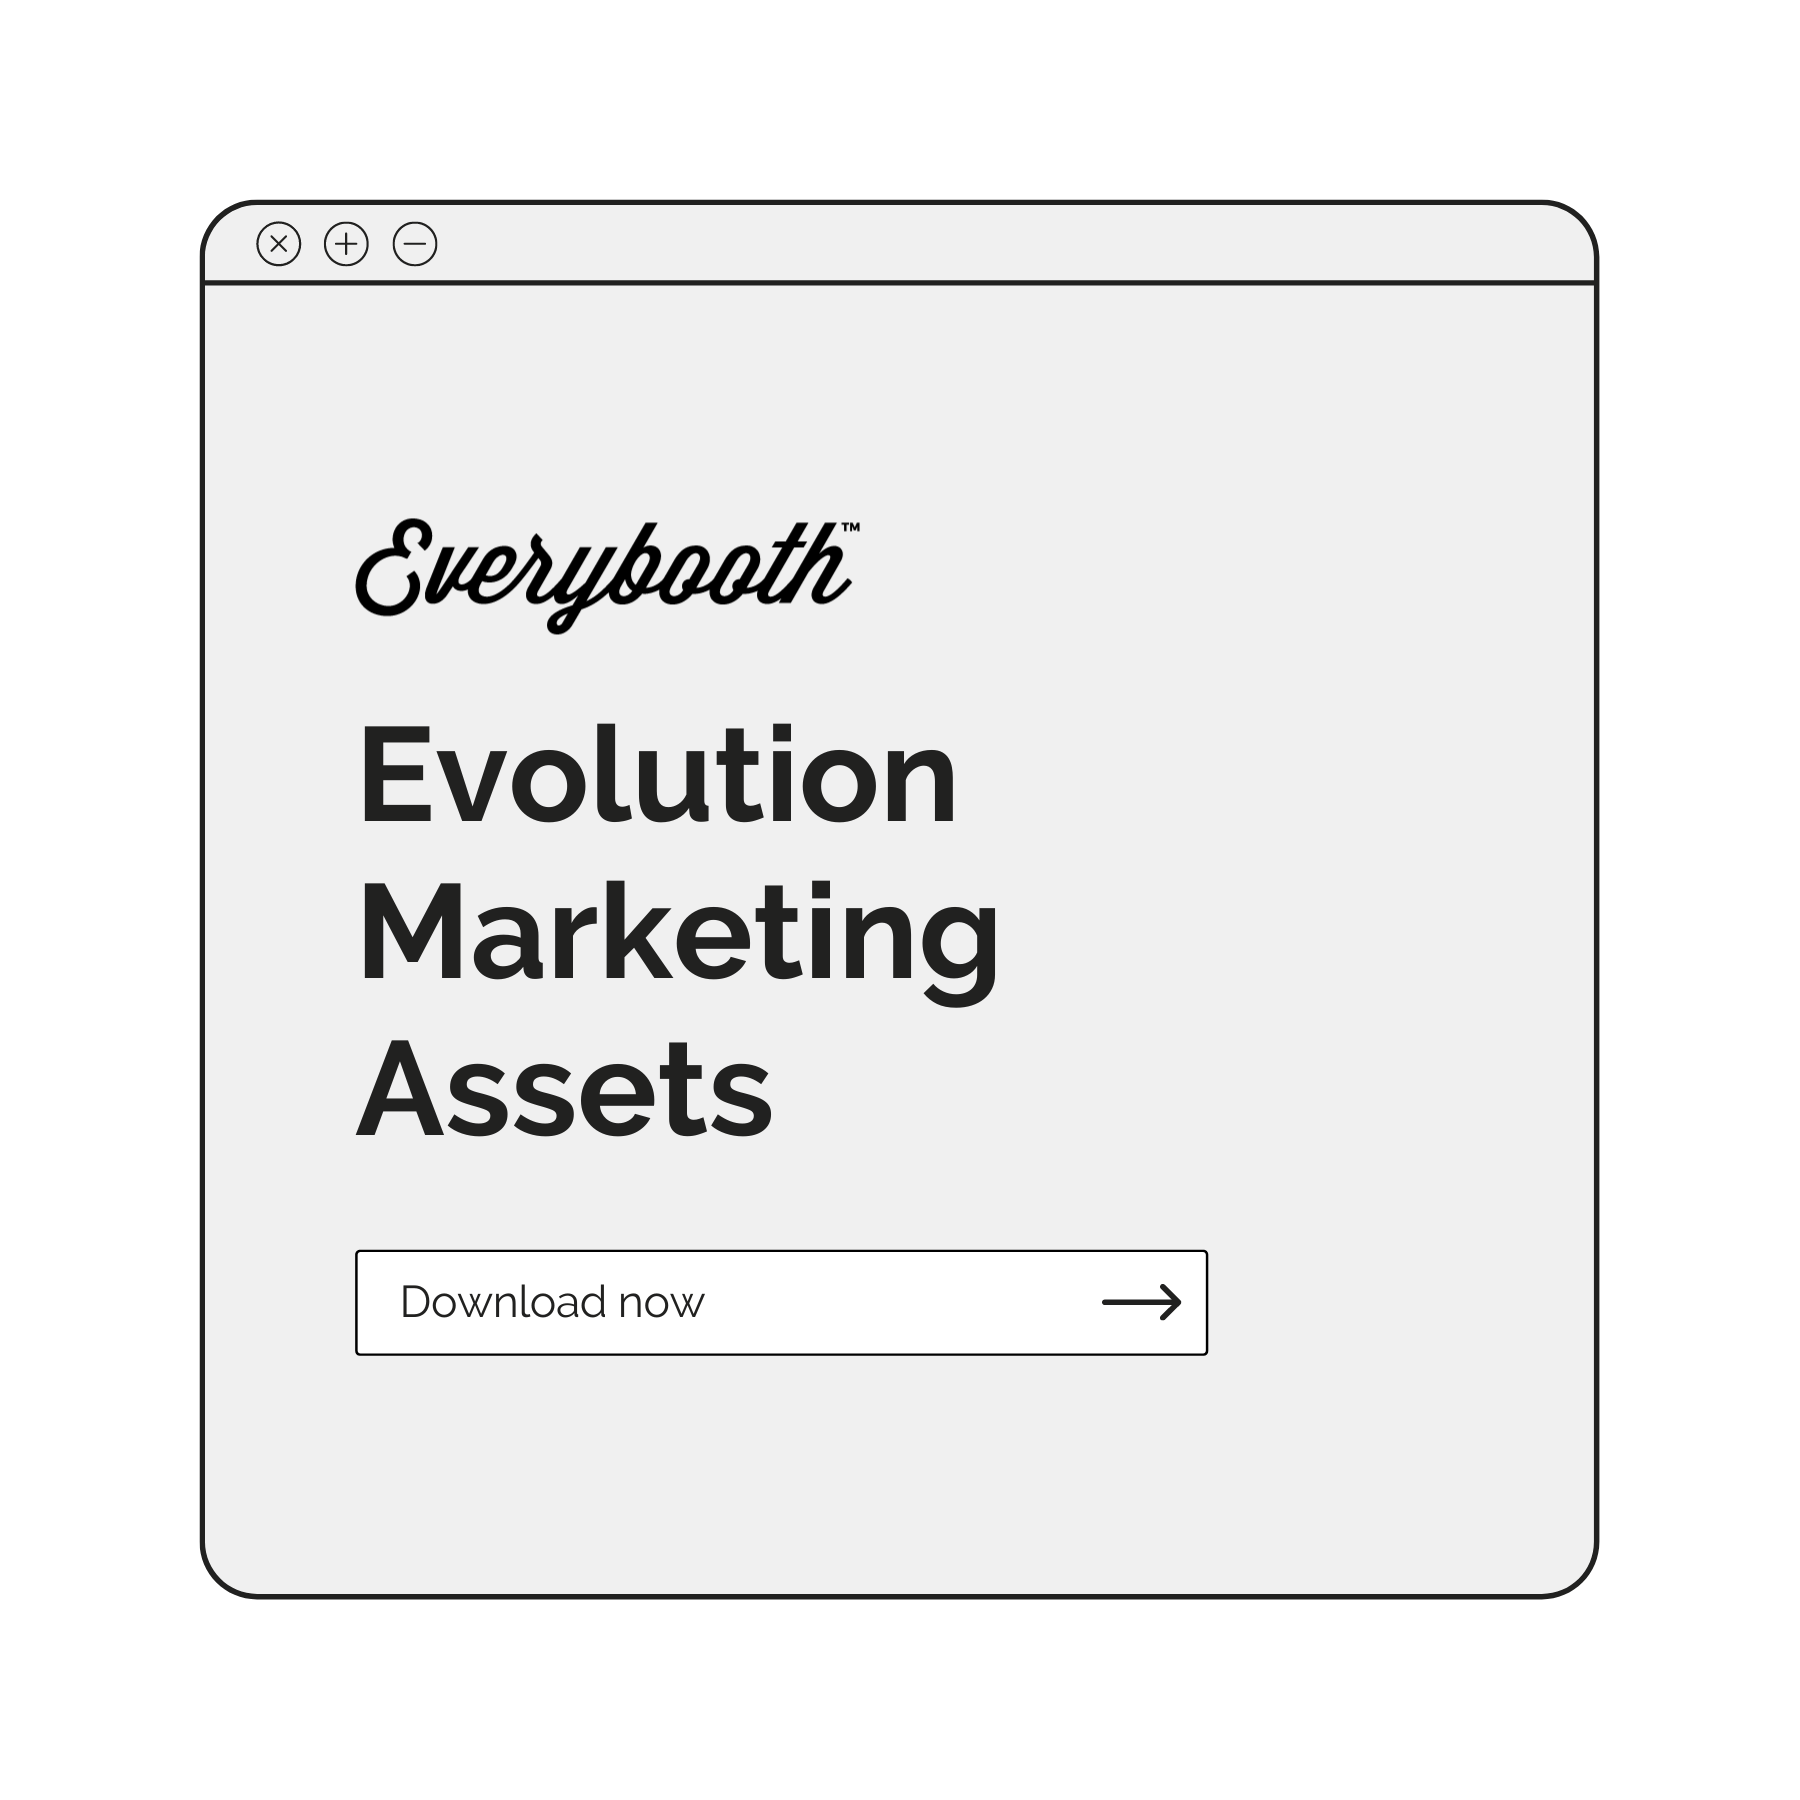 Evolution Marketing Assets